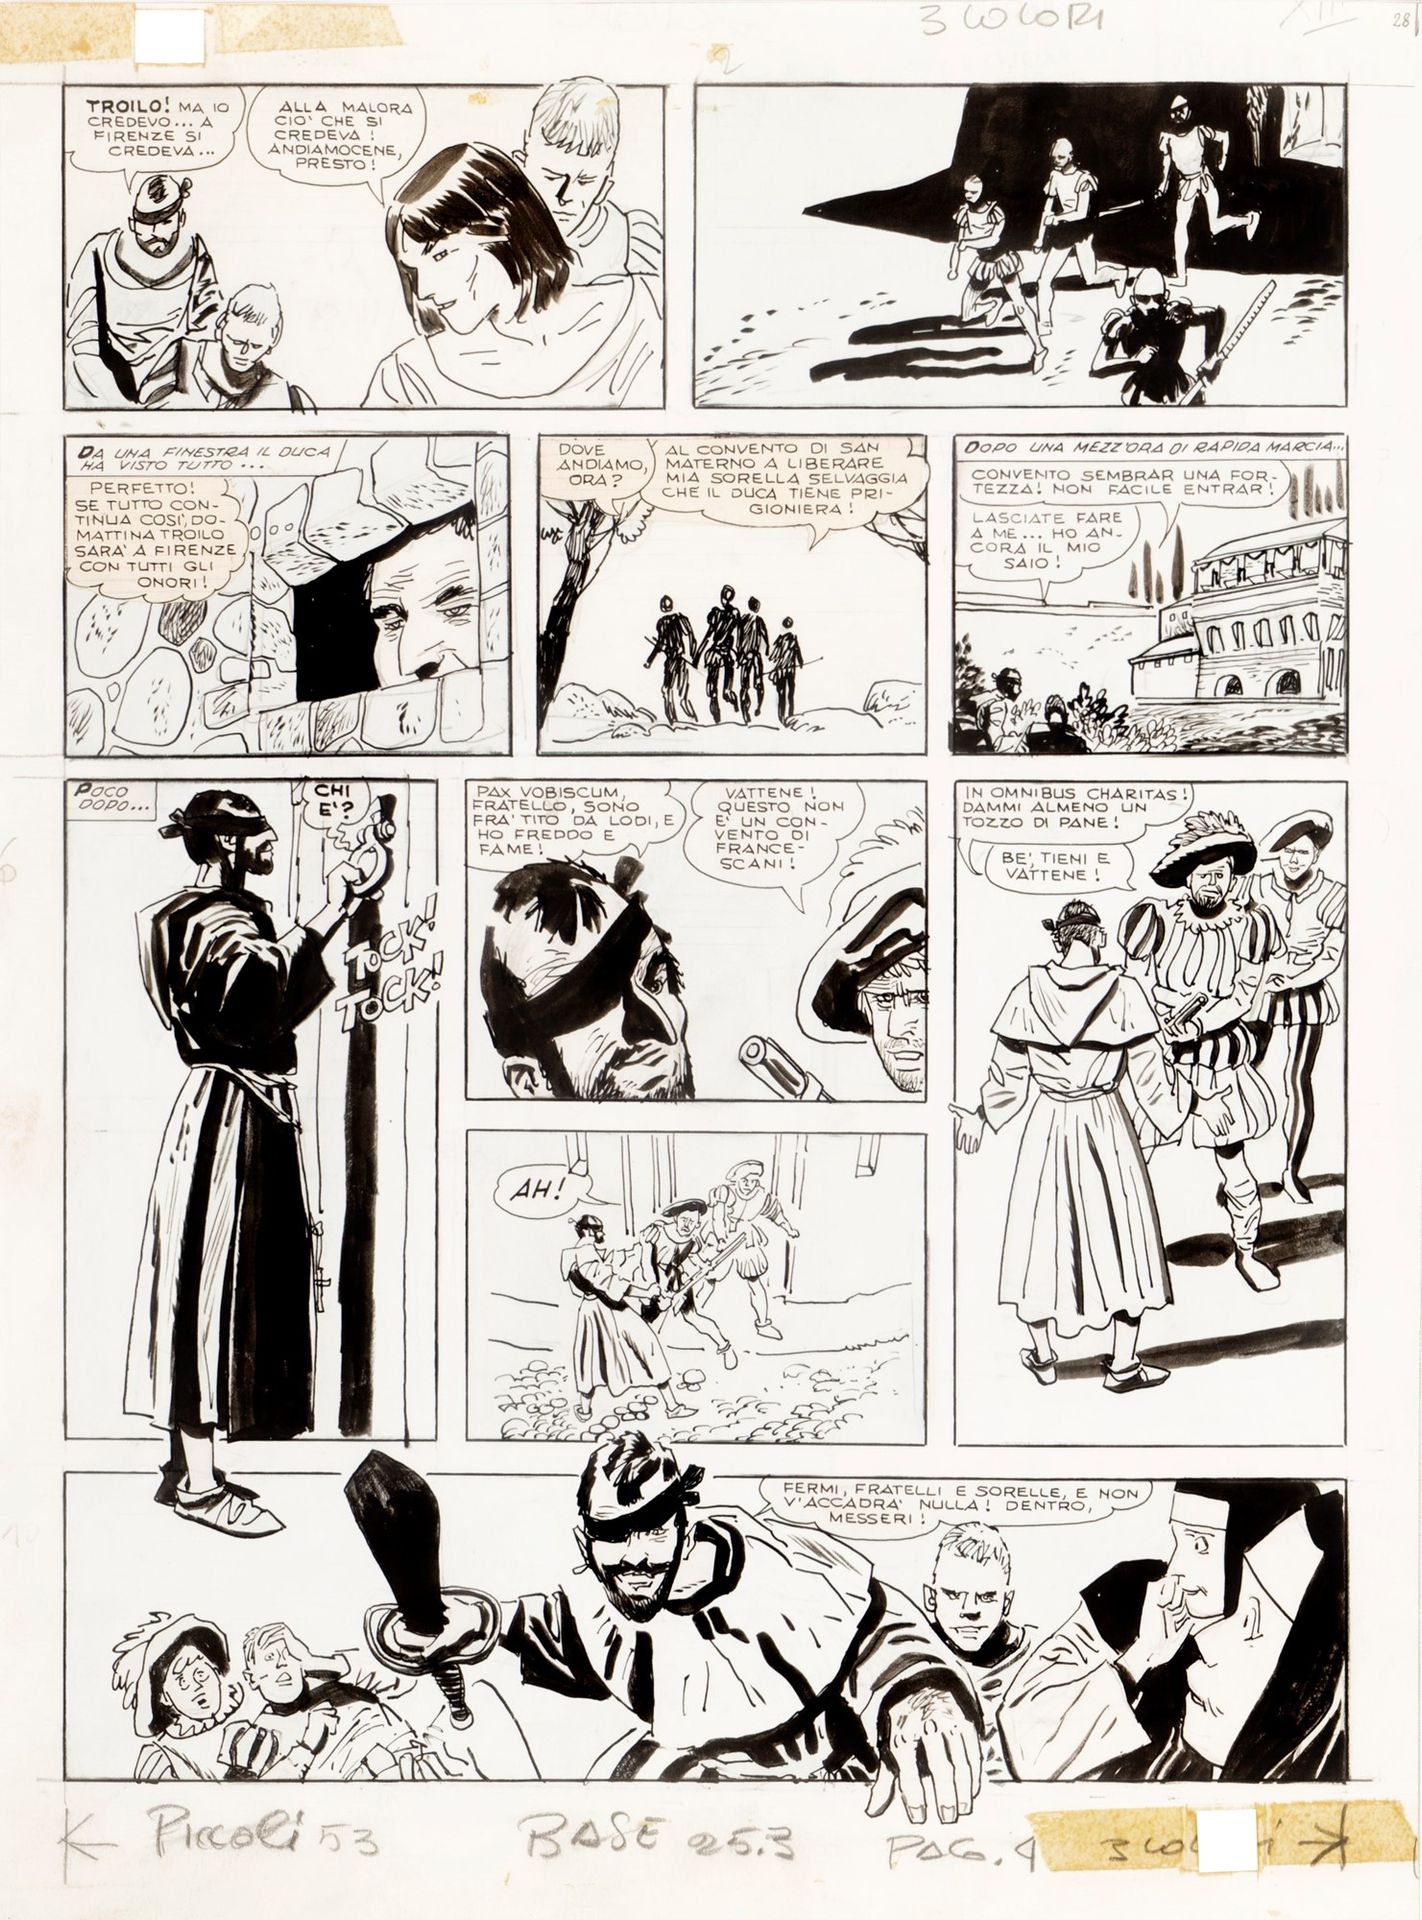 HUGO PRATT Le avventure di Fanfulla, 1967

Crayon et encre sur carton fin
28 x 3&hellip;